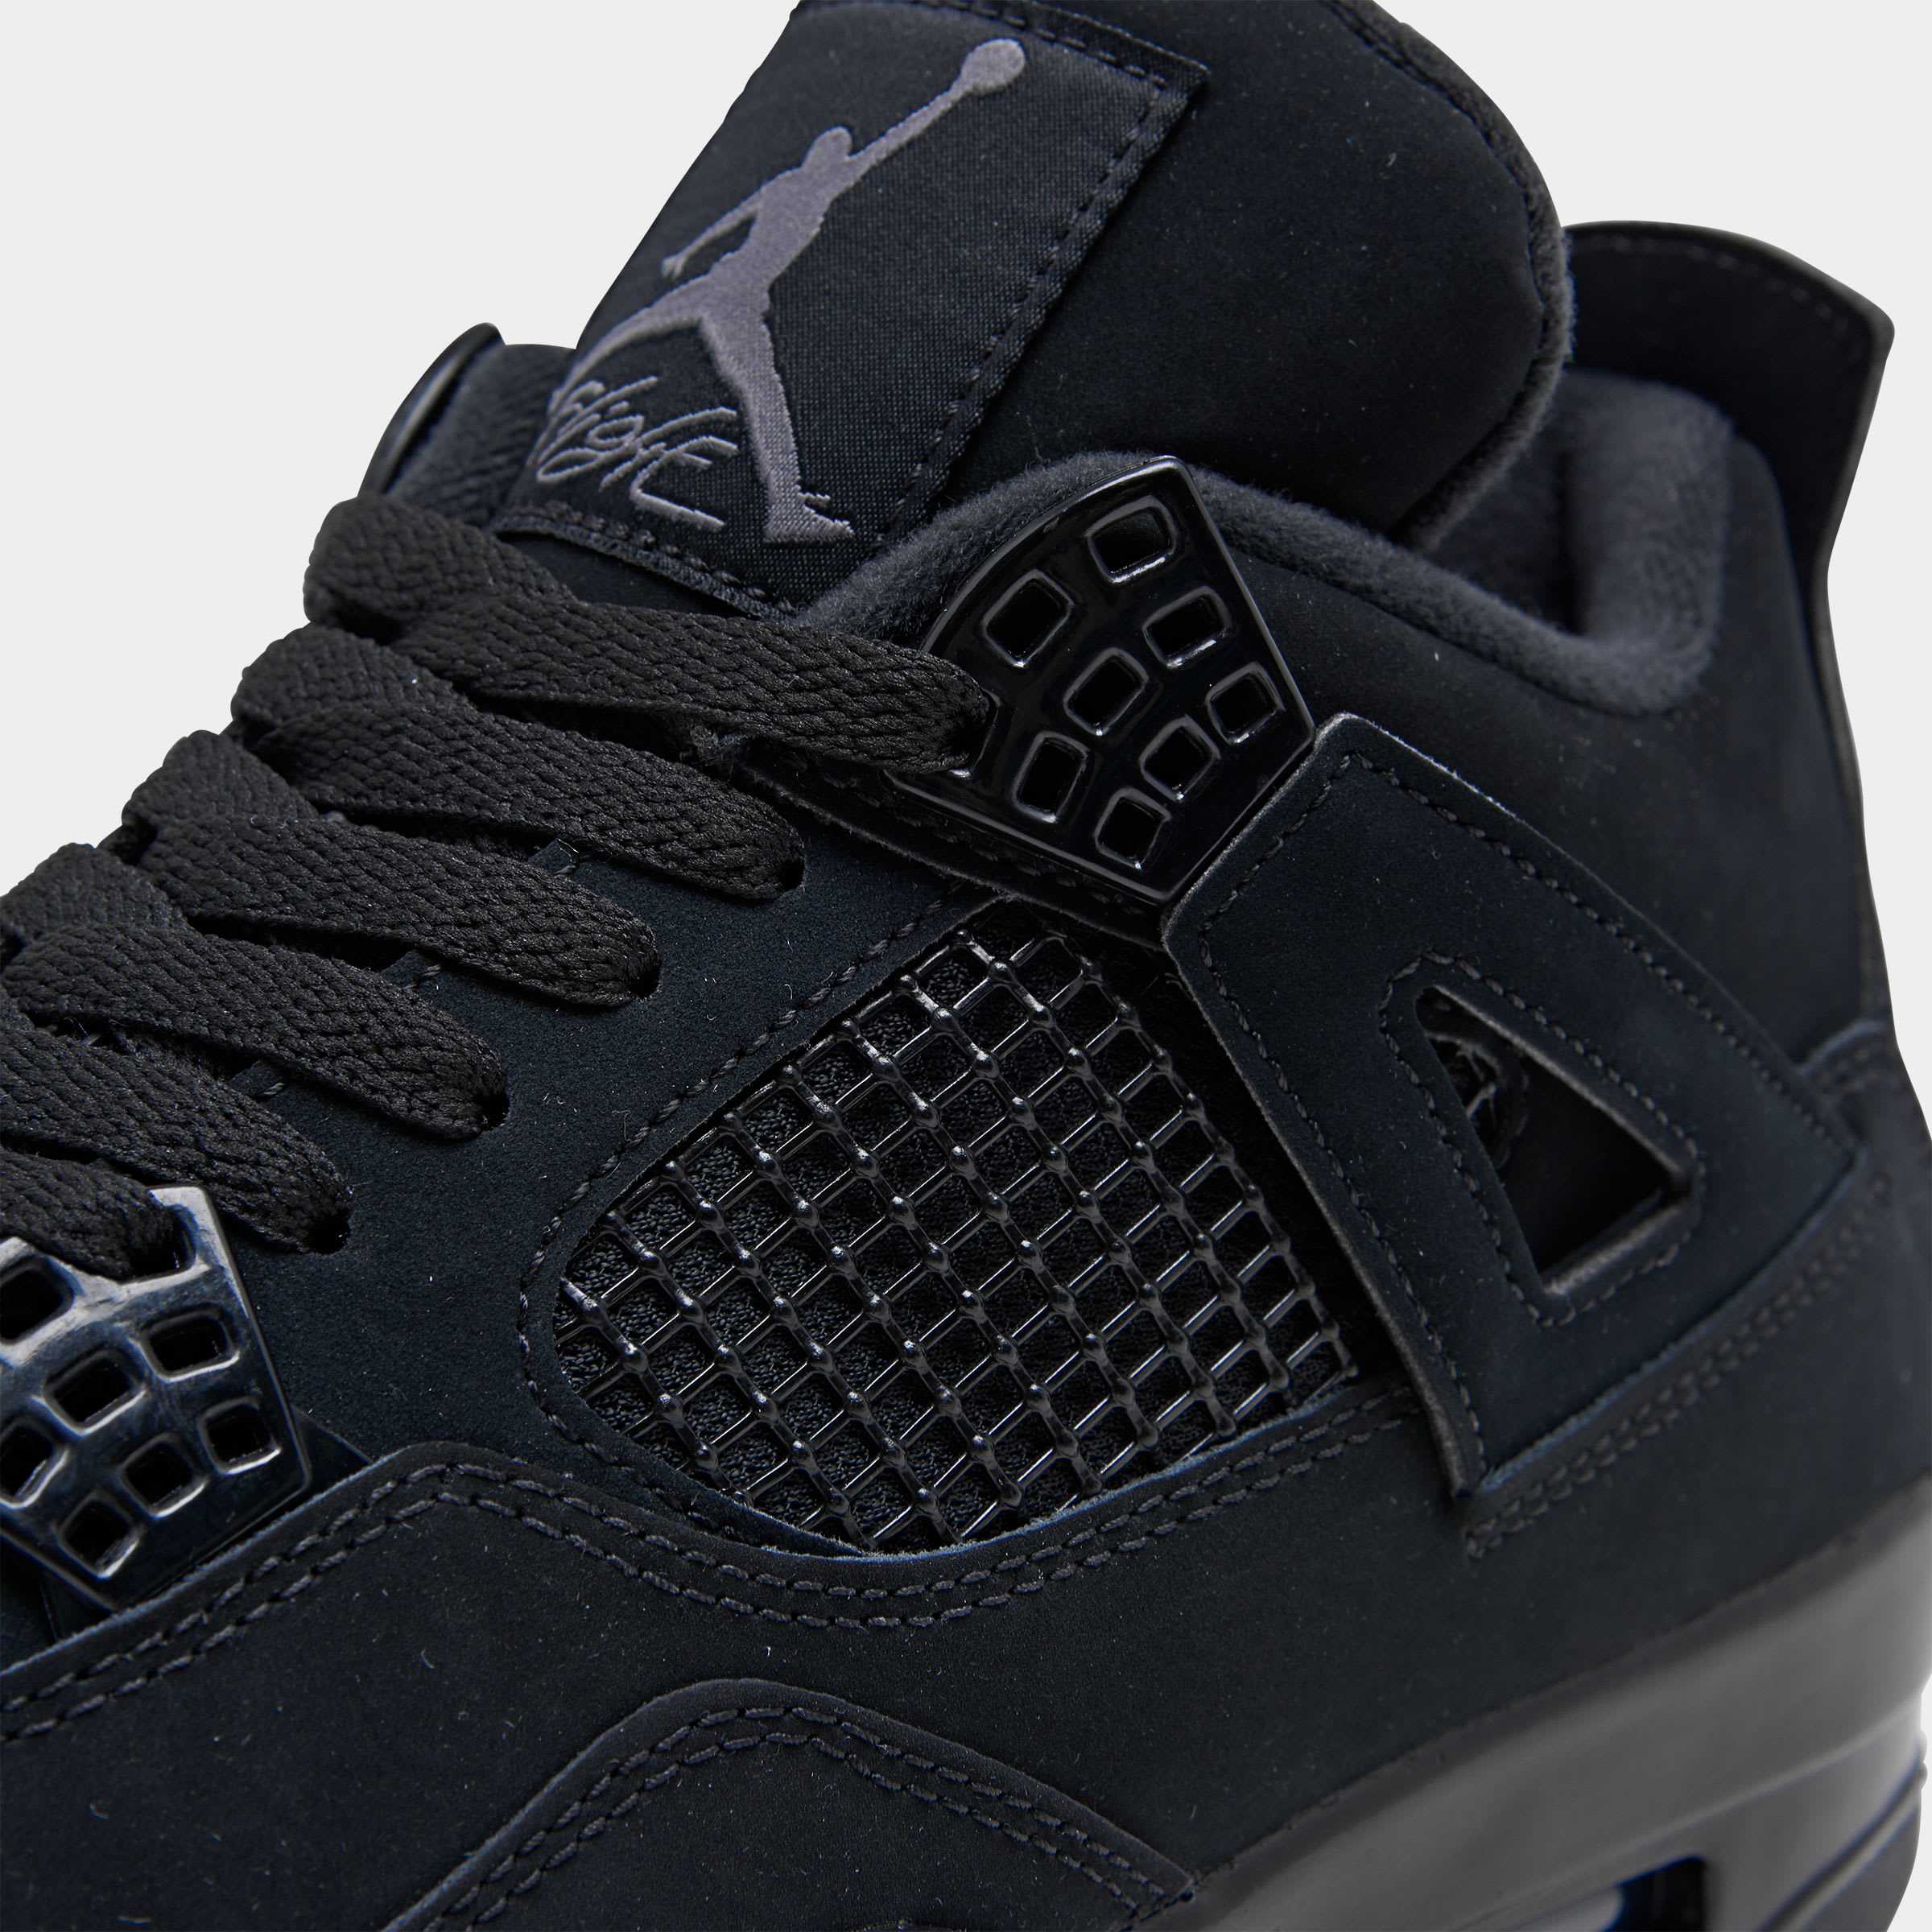 Air Jordan 4 Retro 'Black Cat' Release Date CU1110010 Sole Collector